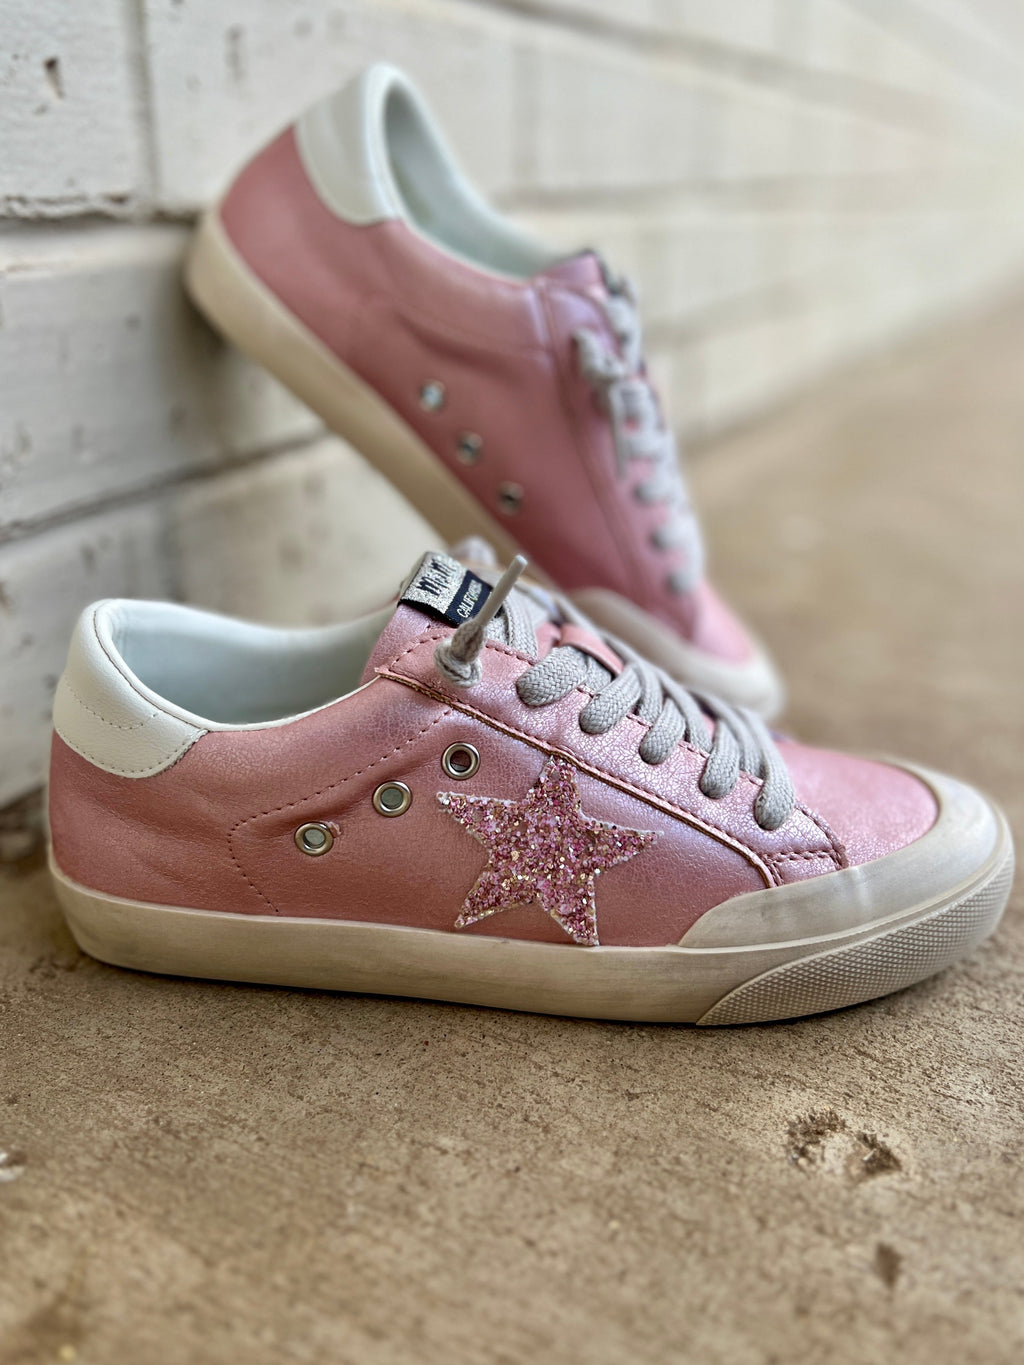 Perfectly Pink Sadie Sneakers | gussieduponline